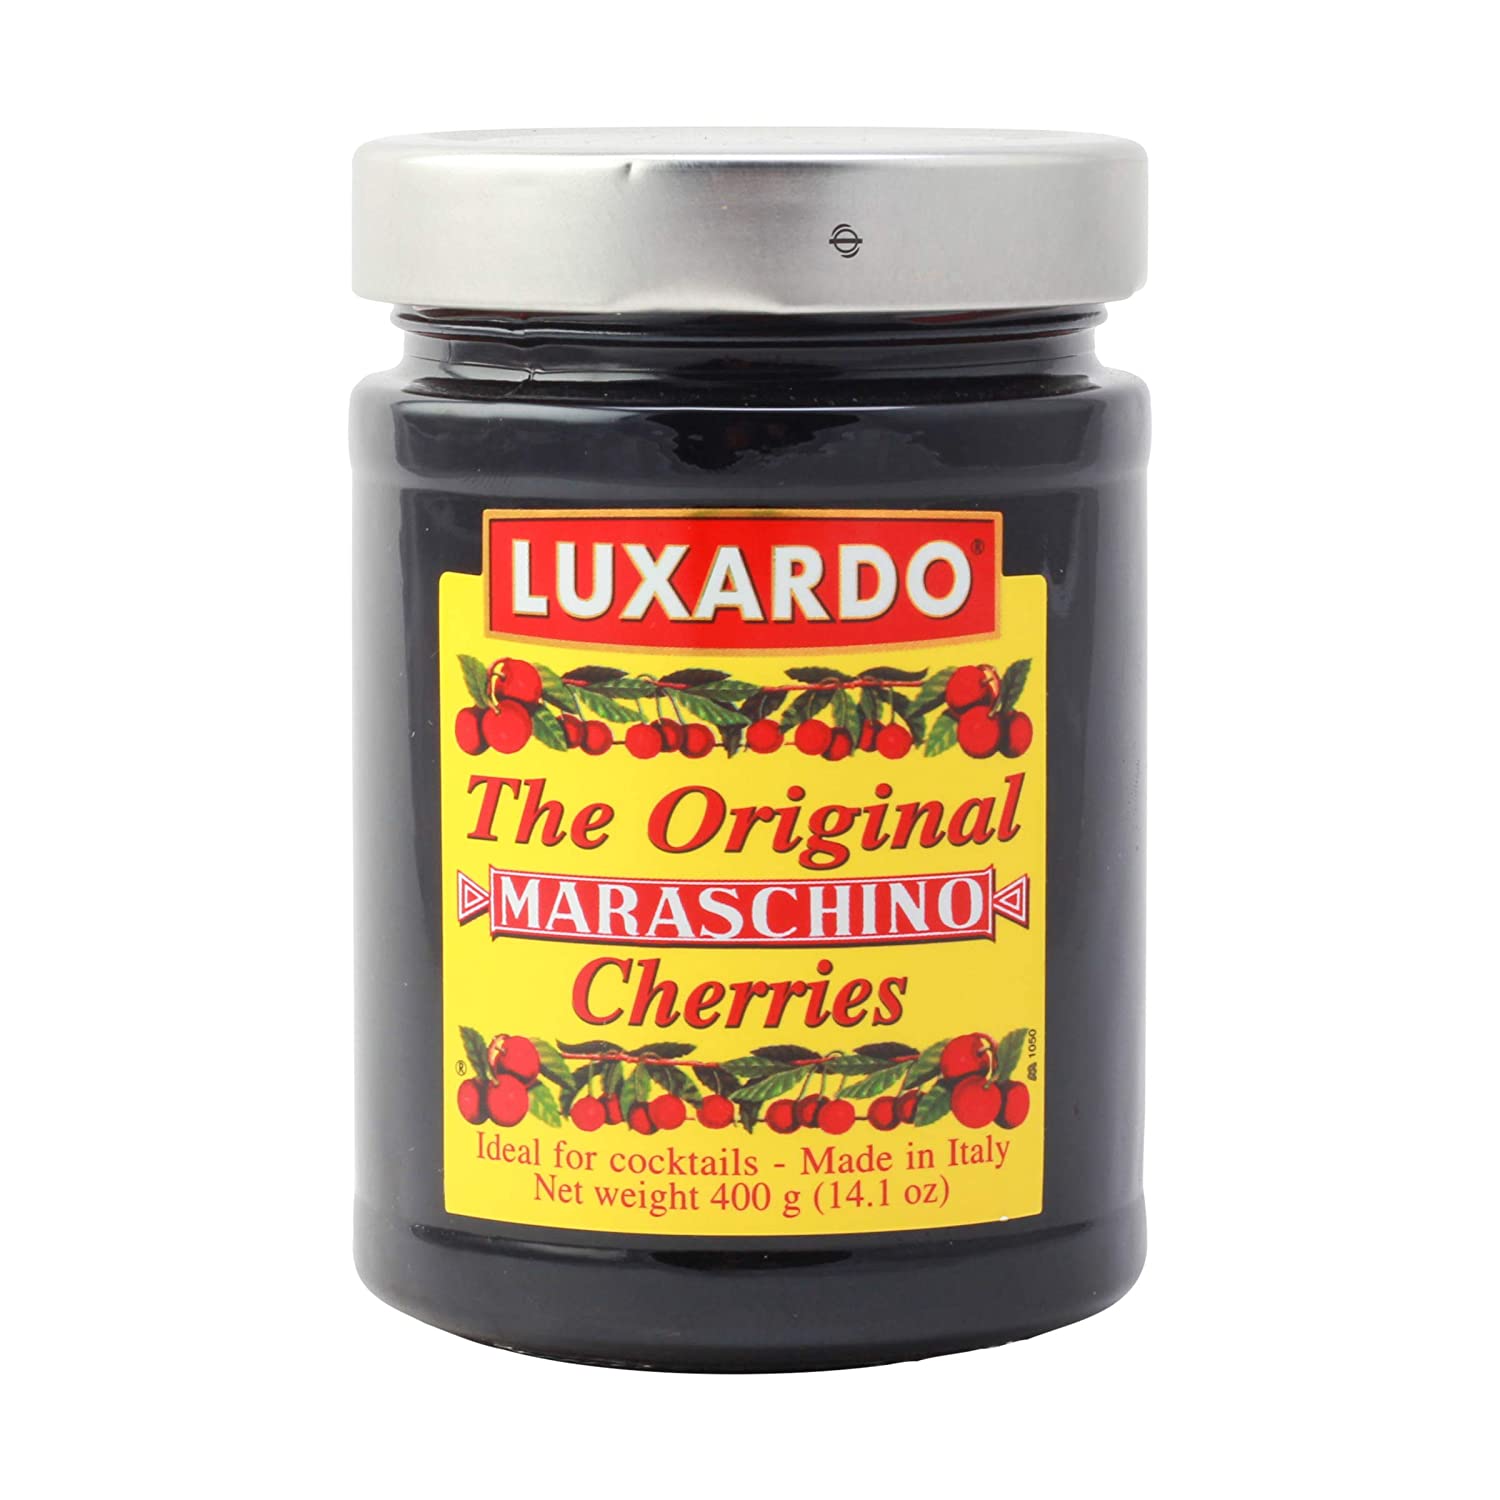 Luxardo - The Original Maraschino Cherries 400g